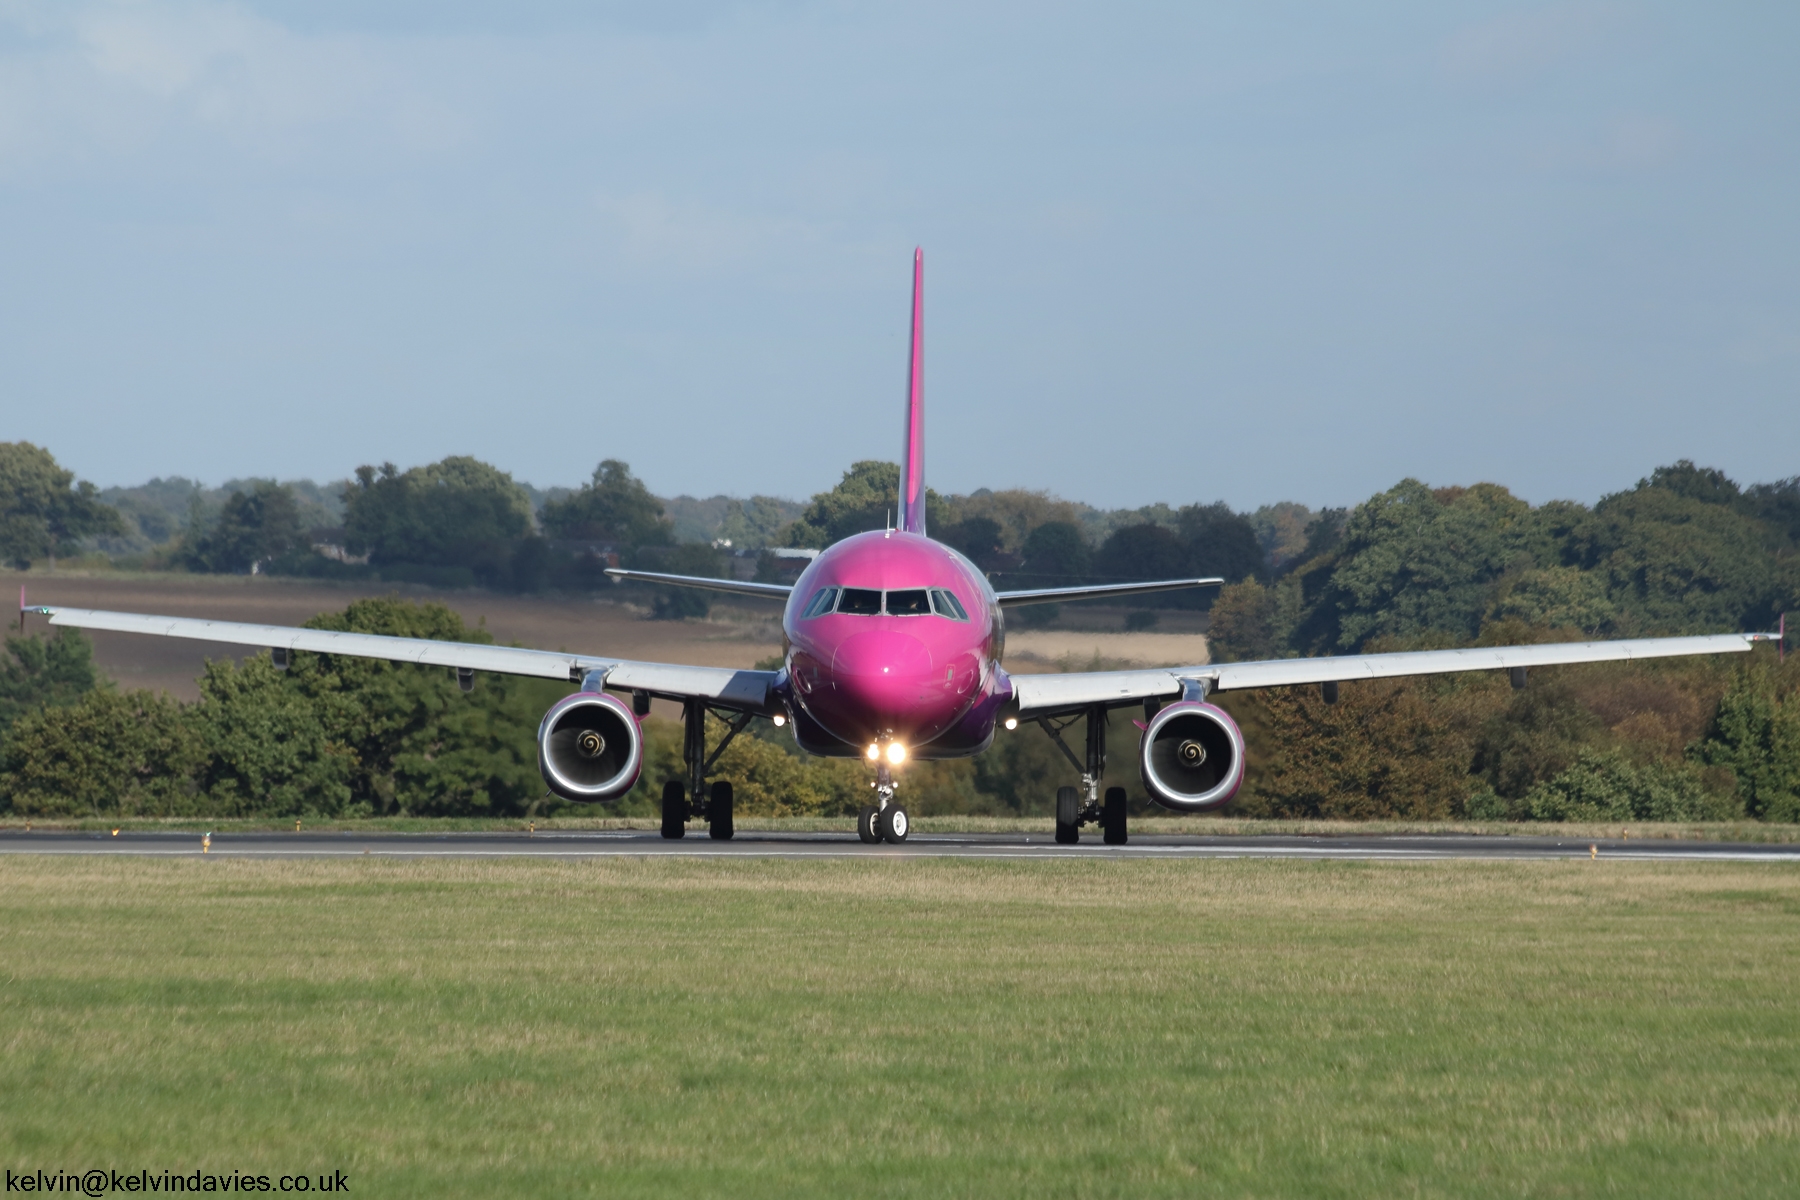 Wizz Air A320 HA-LWL